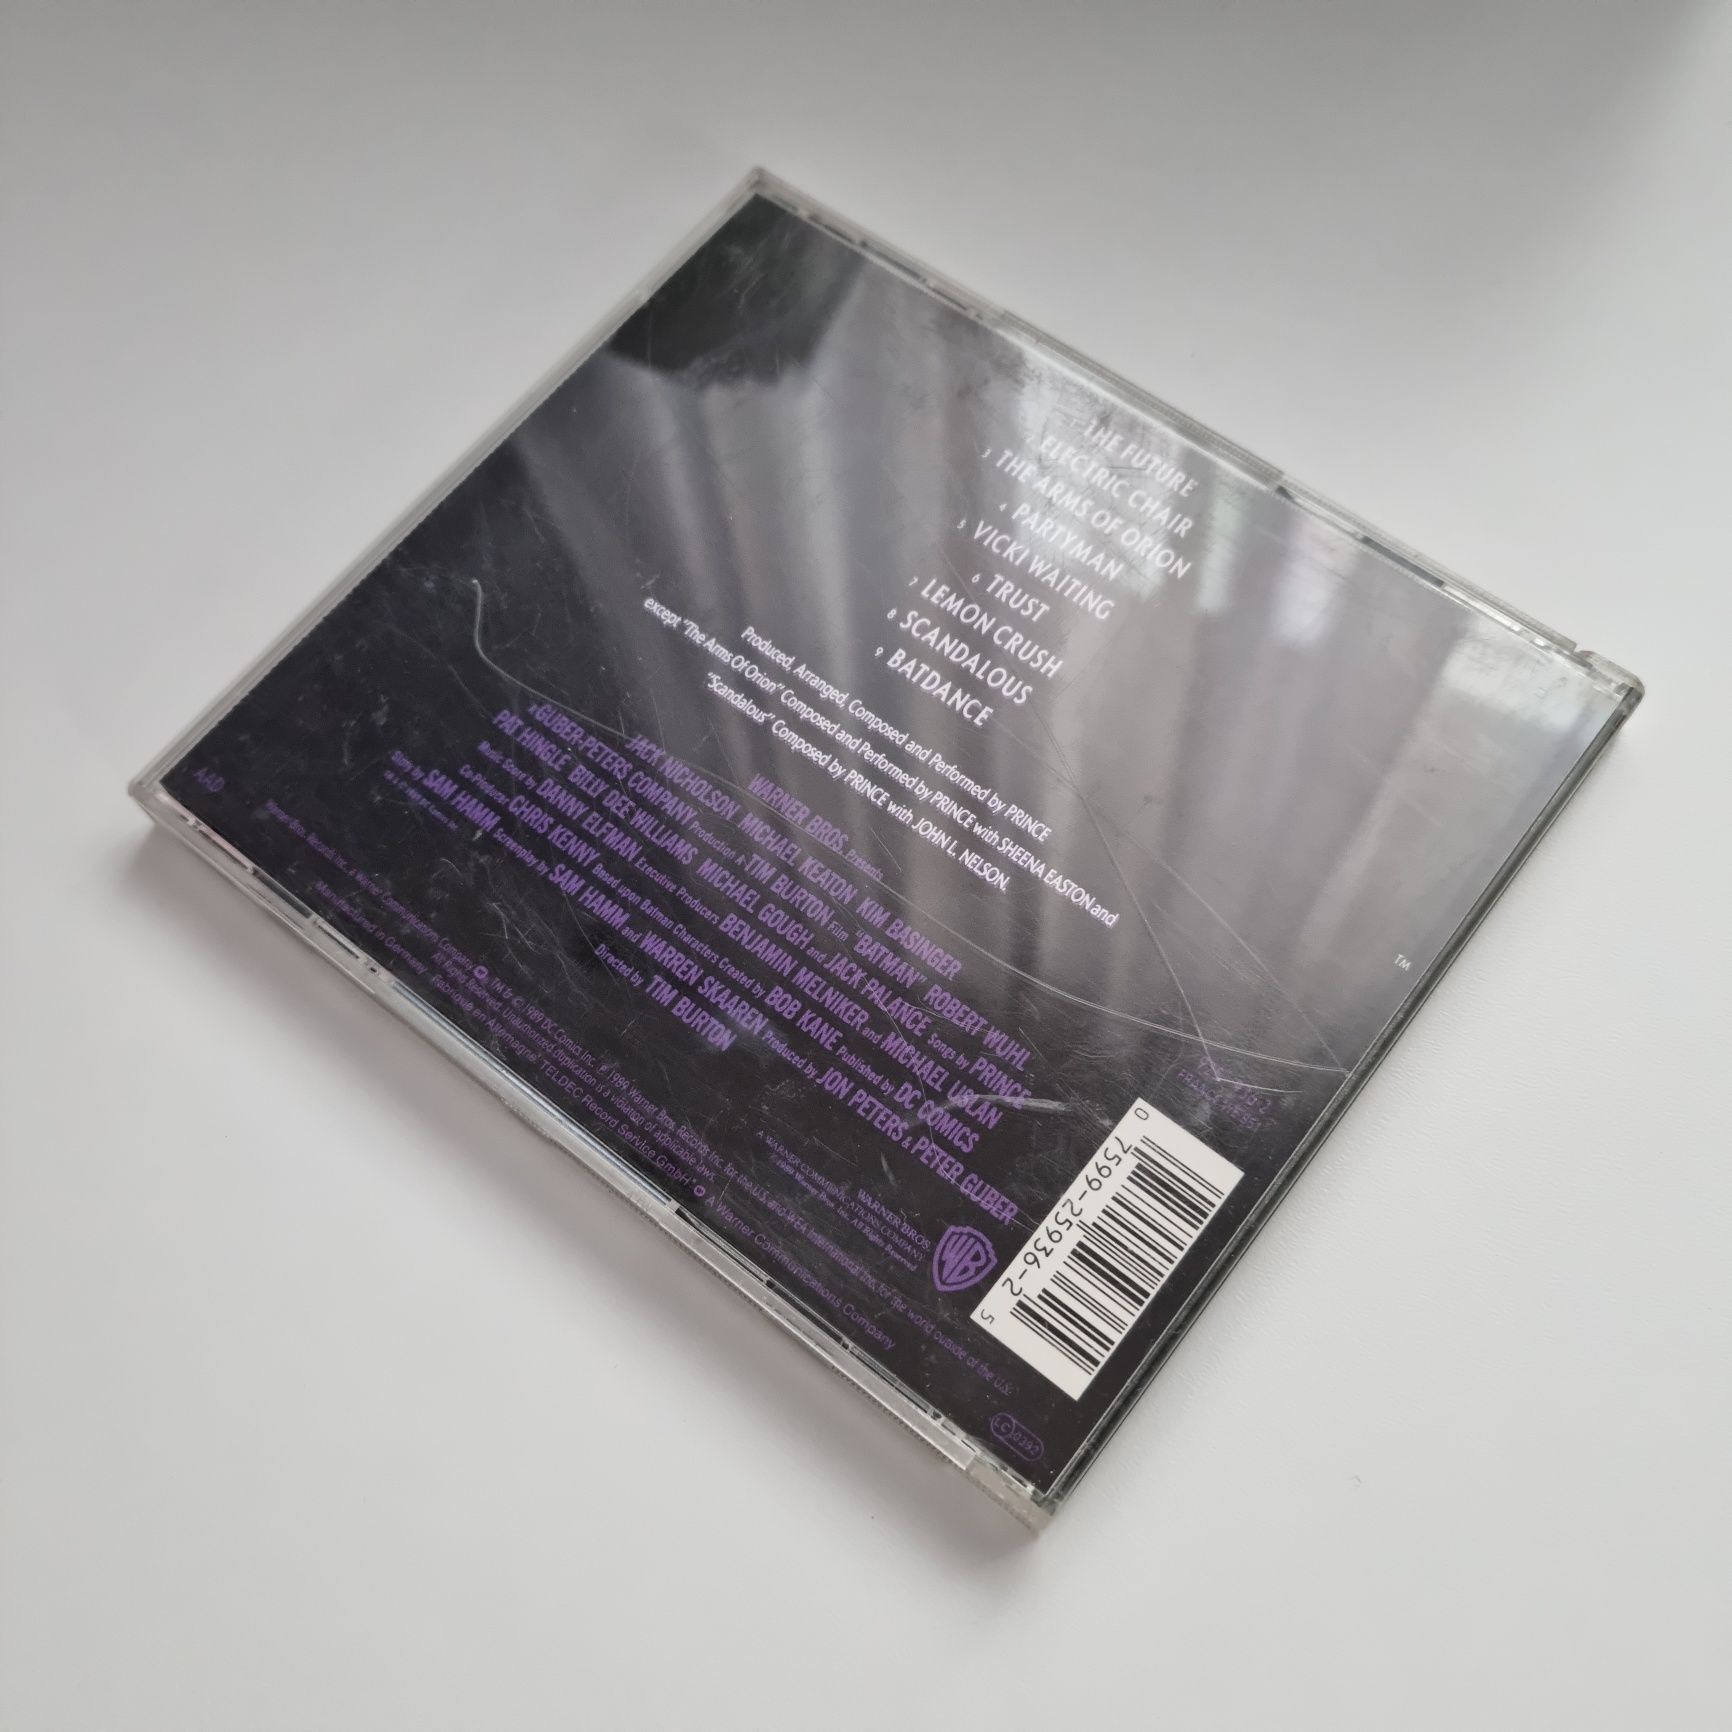 Prince – Batman (Motion Picture Soundtrack) / Album CD